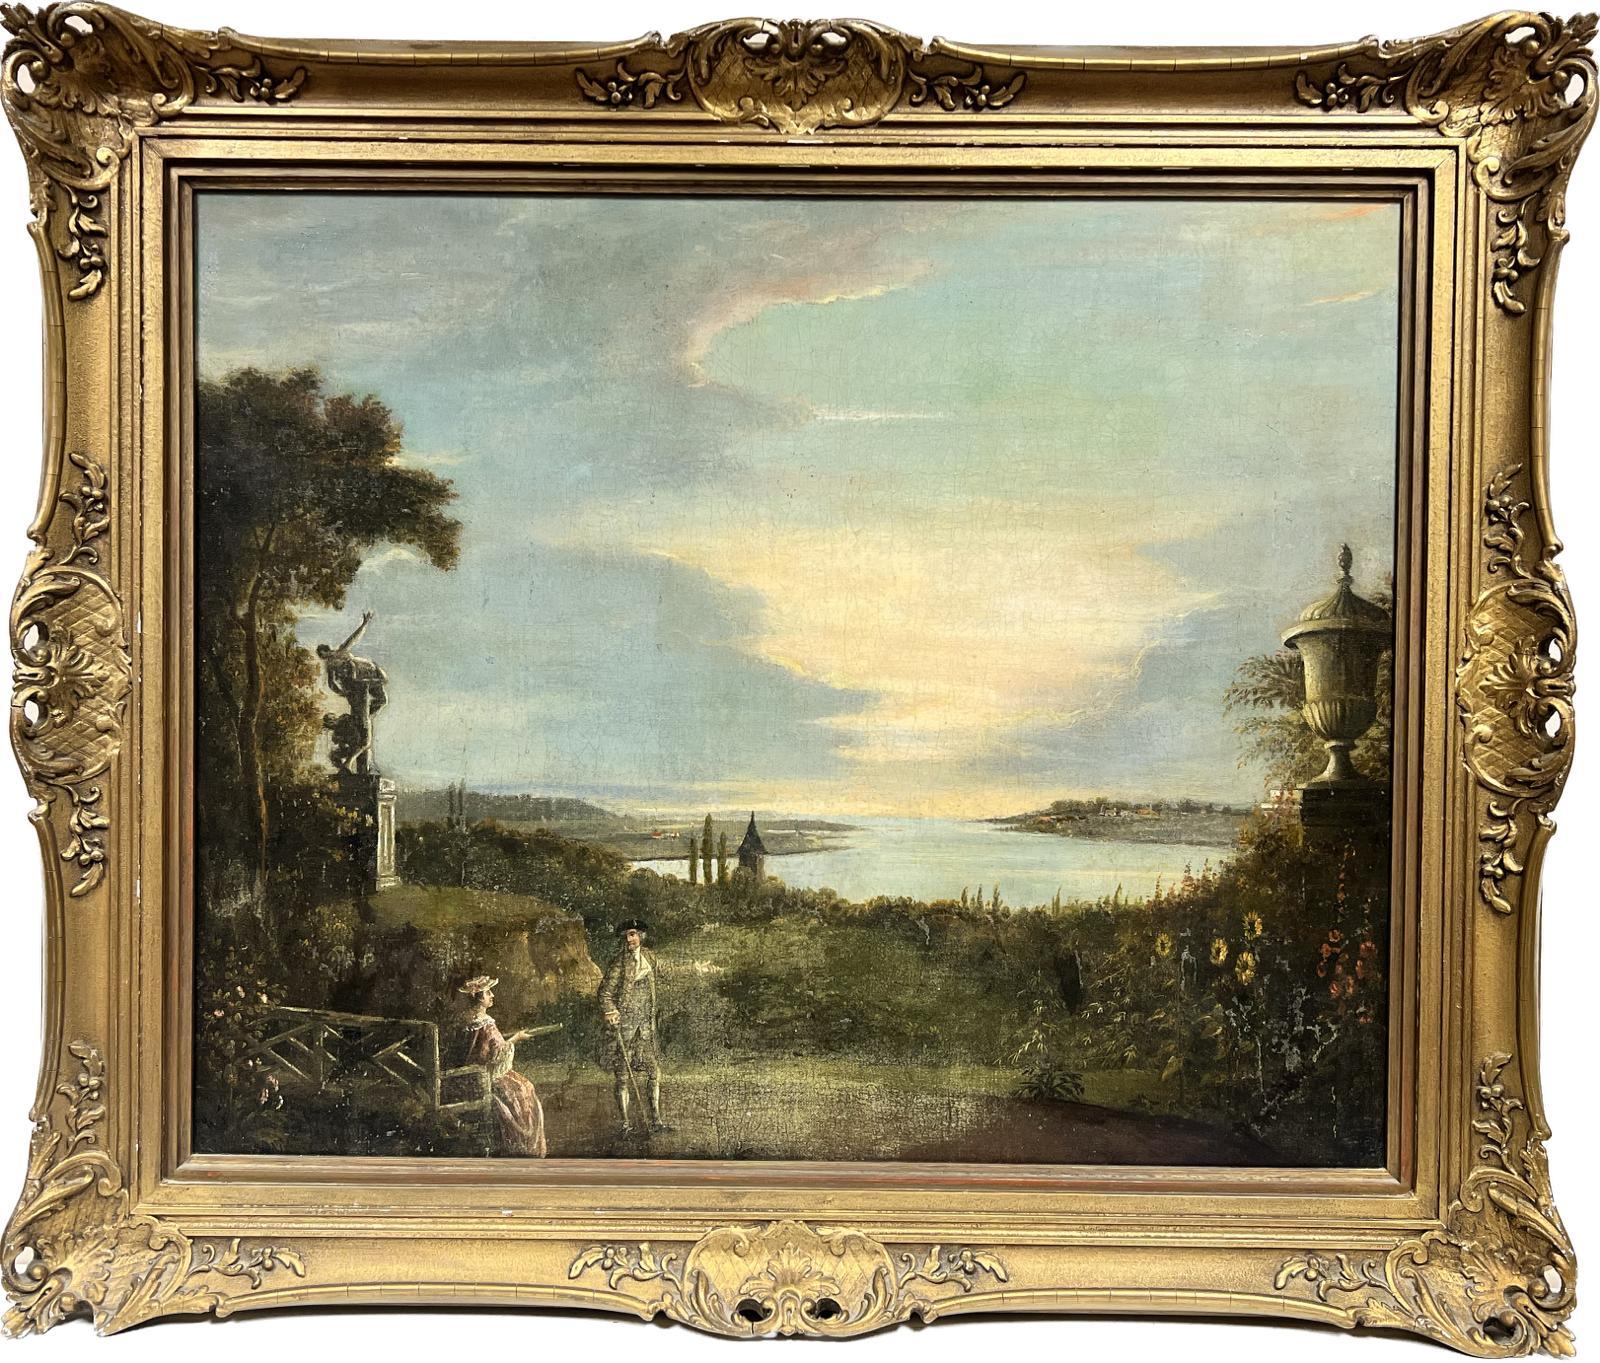 Klassische italienische Landschafts- und Gartenornamente und Figuren aus dem 18. Jahrhundert